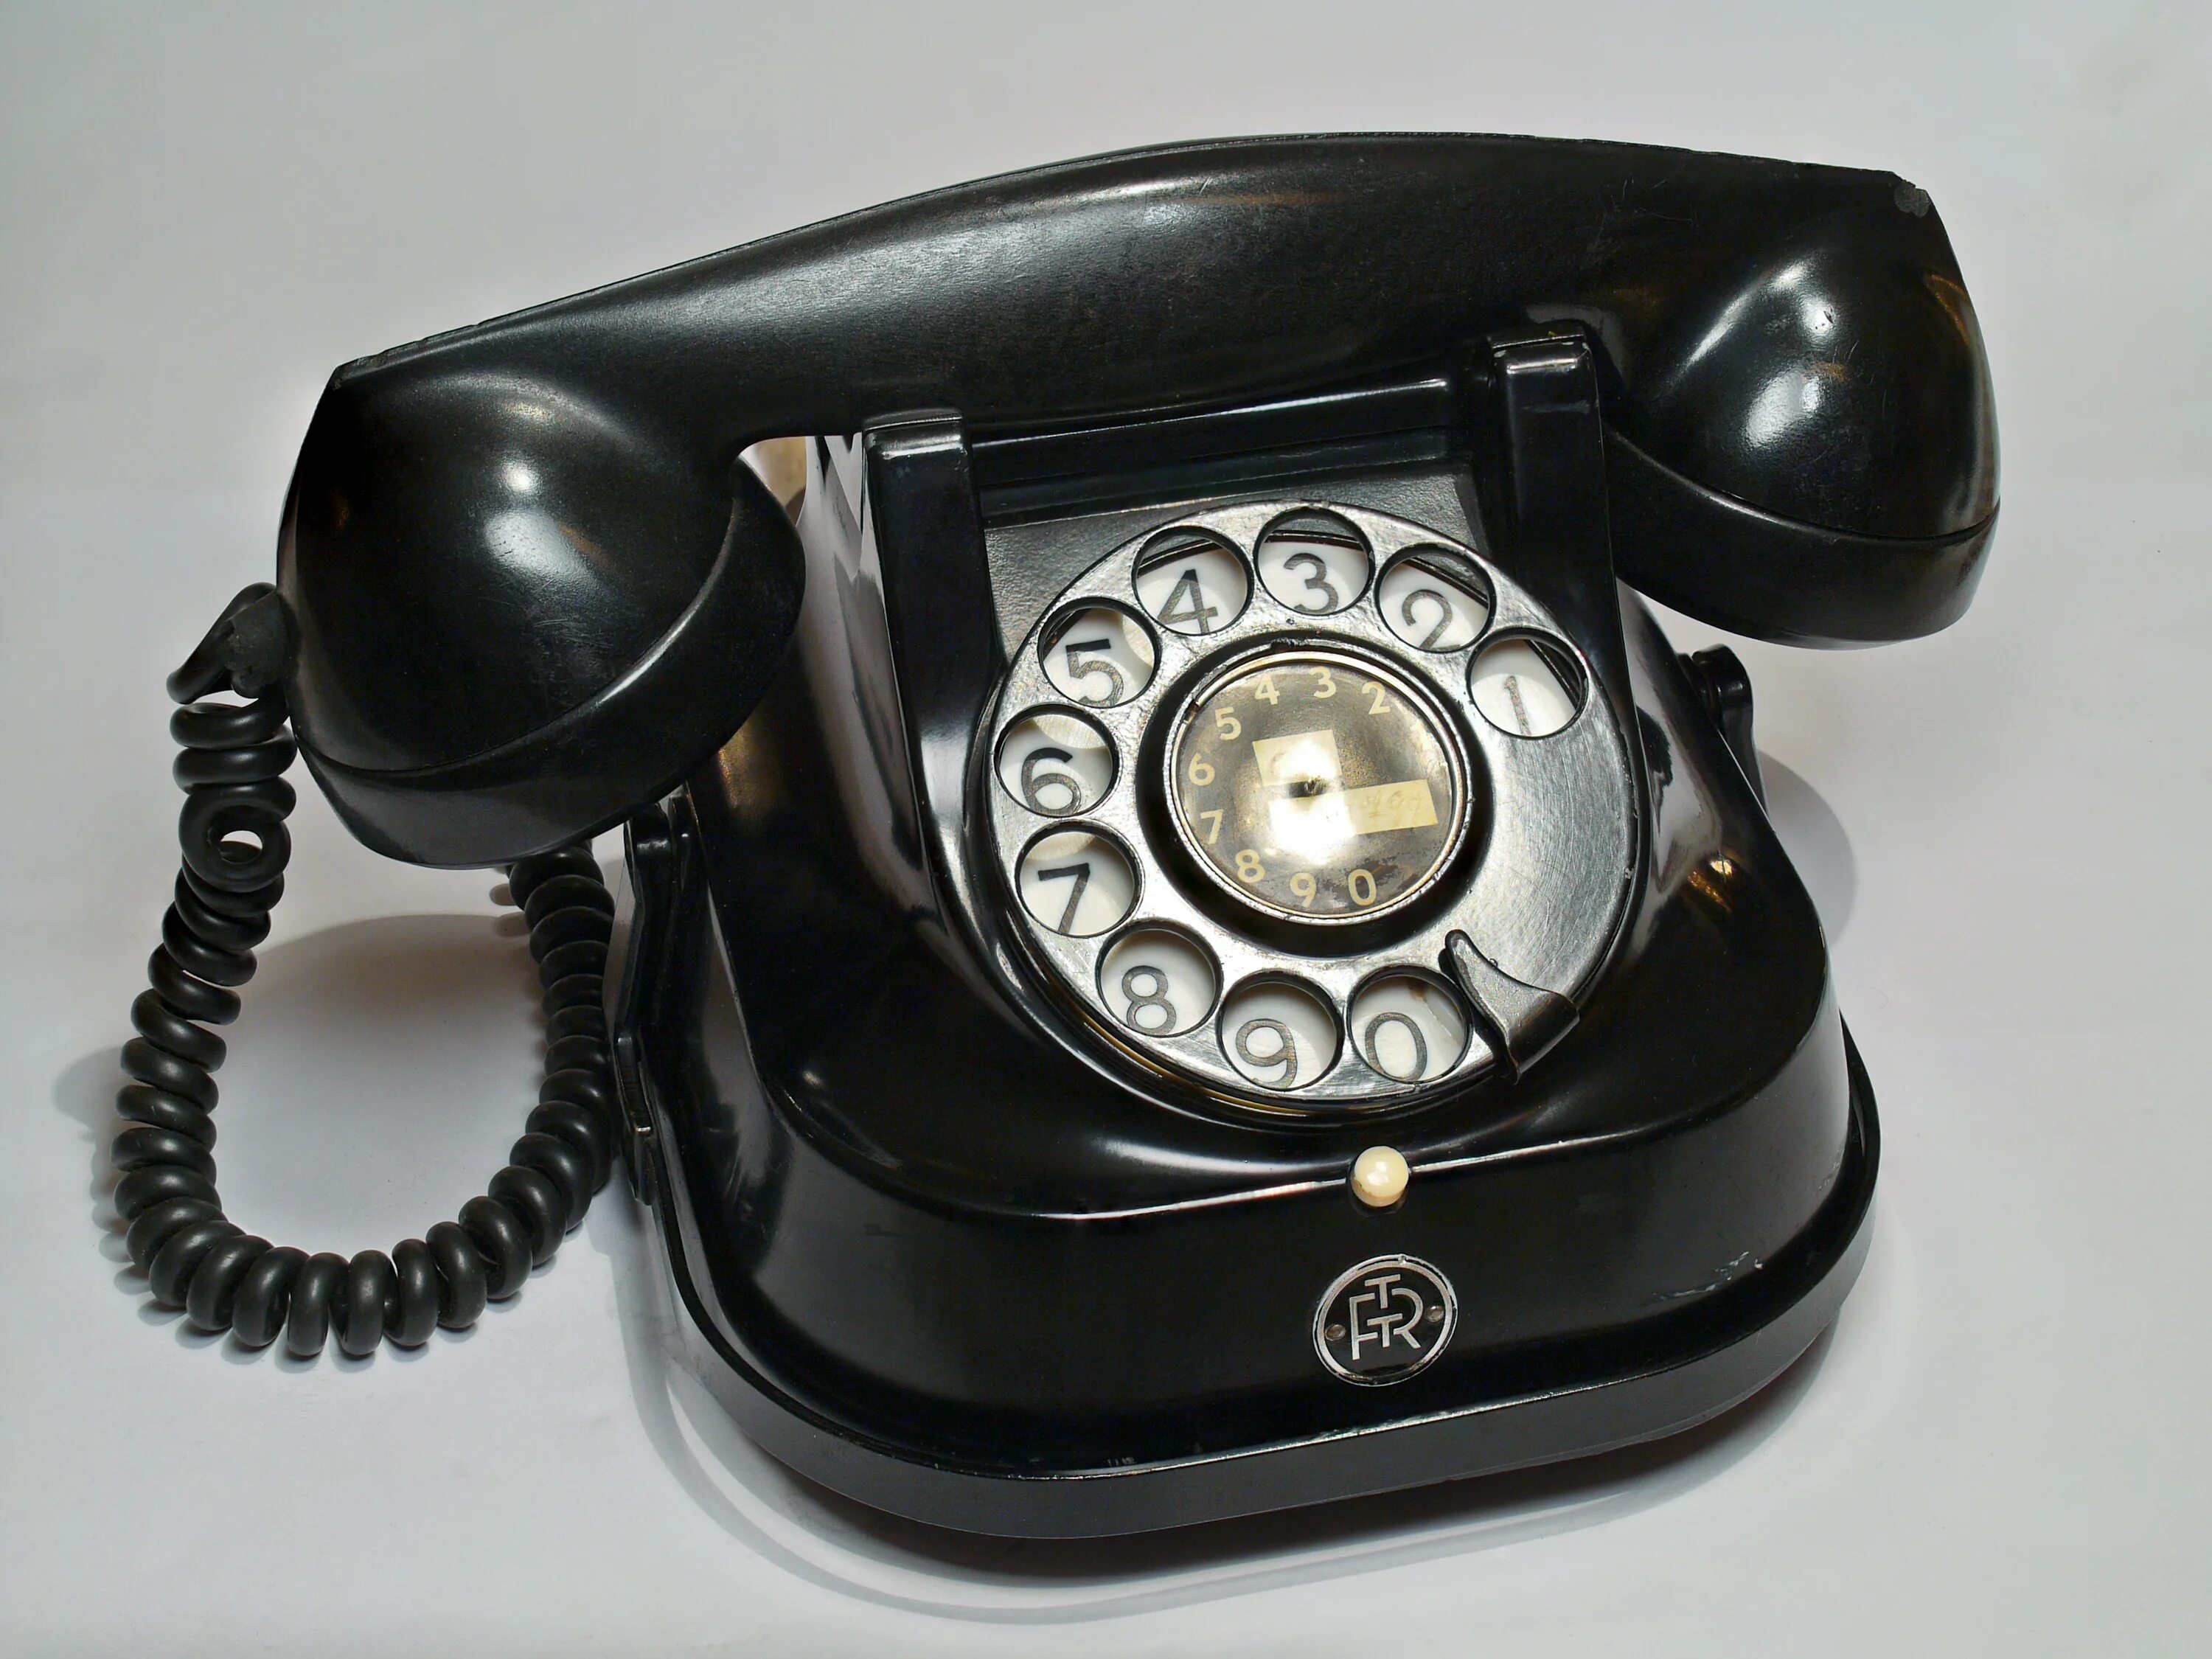 Изображения старого телефона. Телефонный аппарат сапфир-2. Телефонный аппарат w-28. Телефонный аппарат ста-4цб. Телефонный аппарат Строуджера с дисковым номеронабирателем 1899.